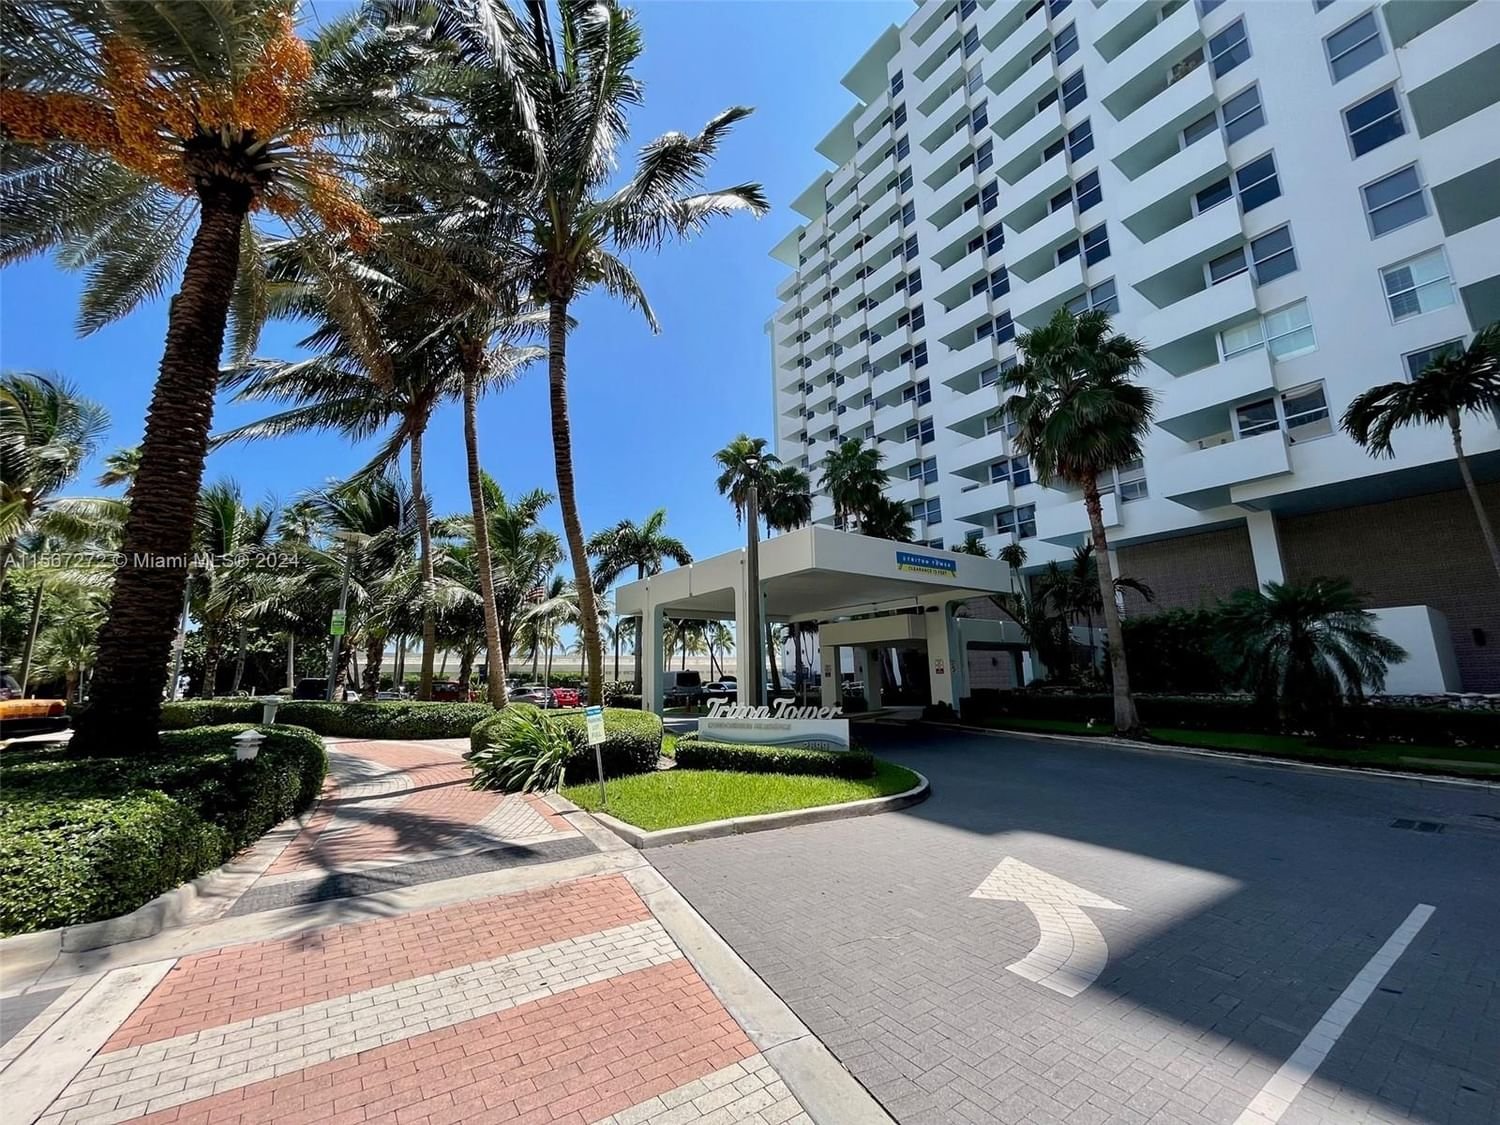 Real estate property located at 2899 Collins Ave #815, Miami-Dade County, TRITON TOWER CONDO, Miami Beach, FL